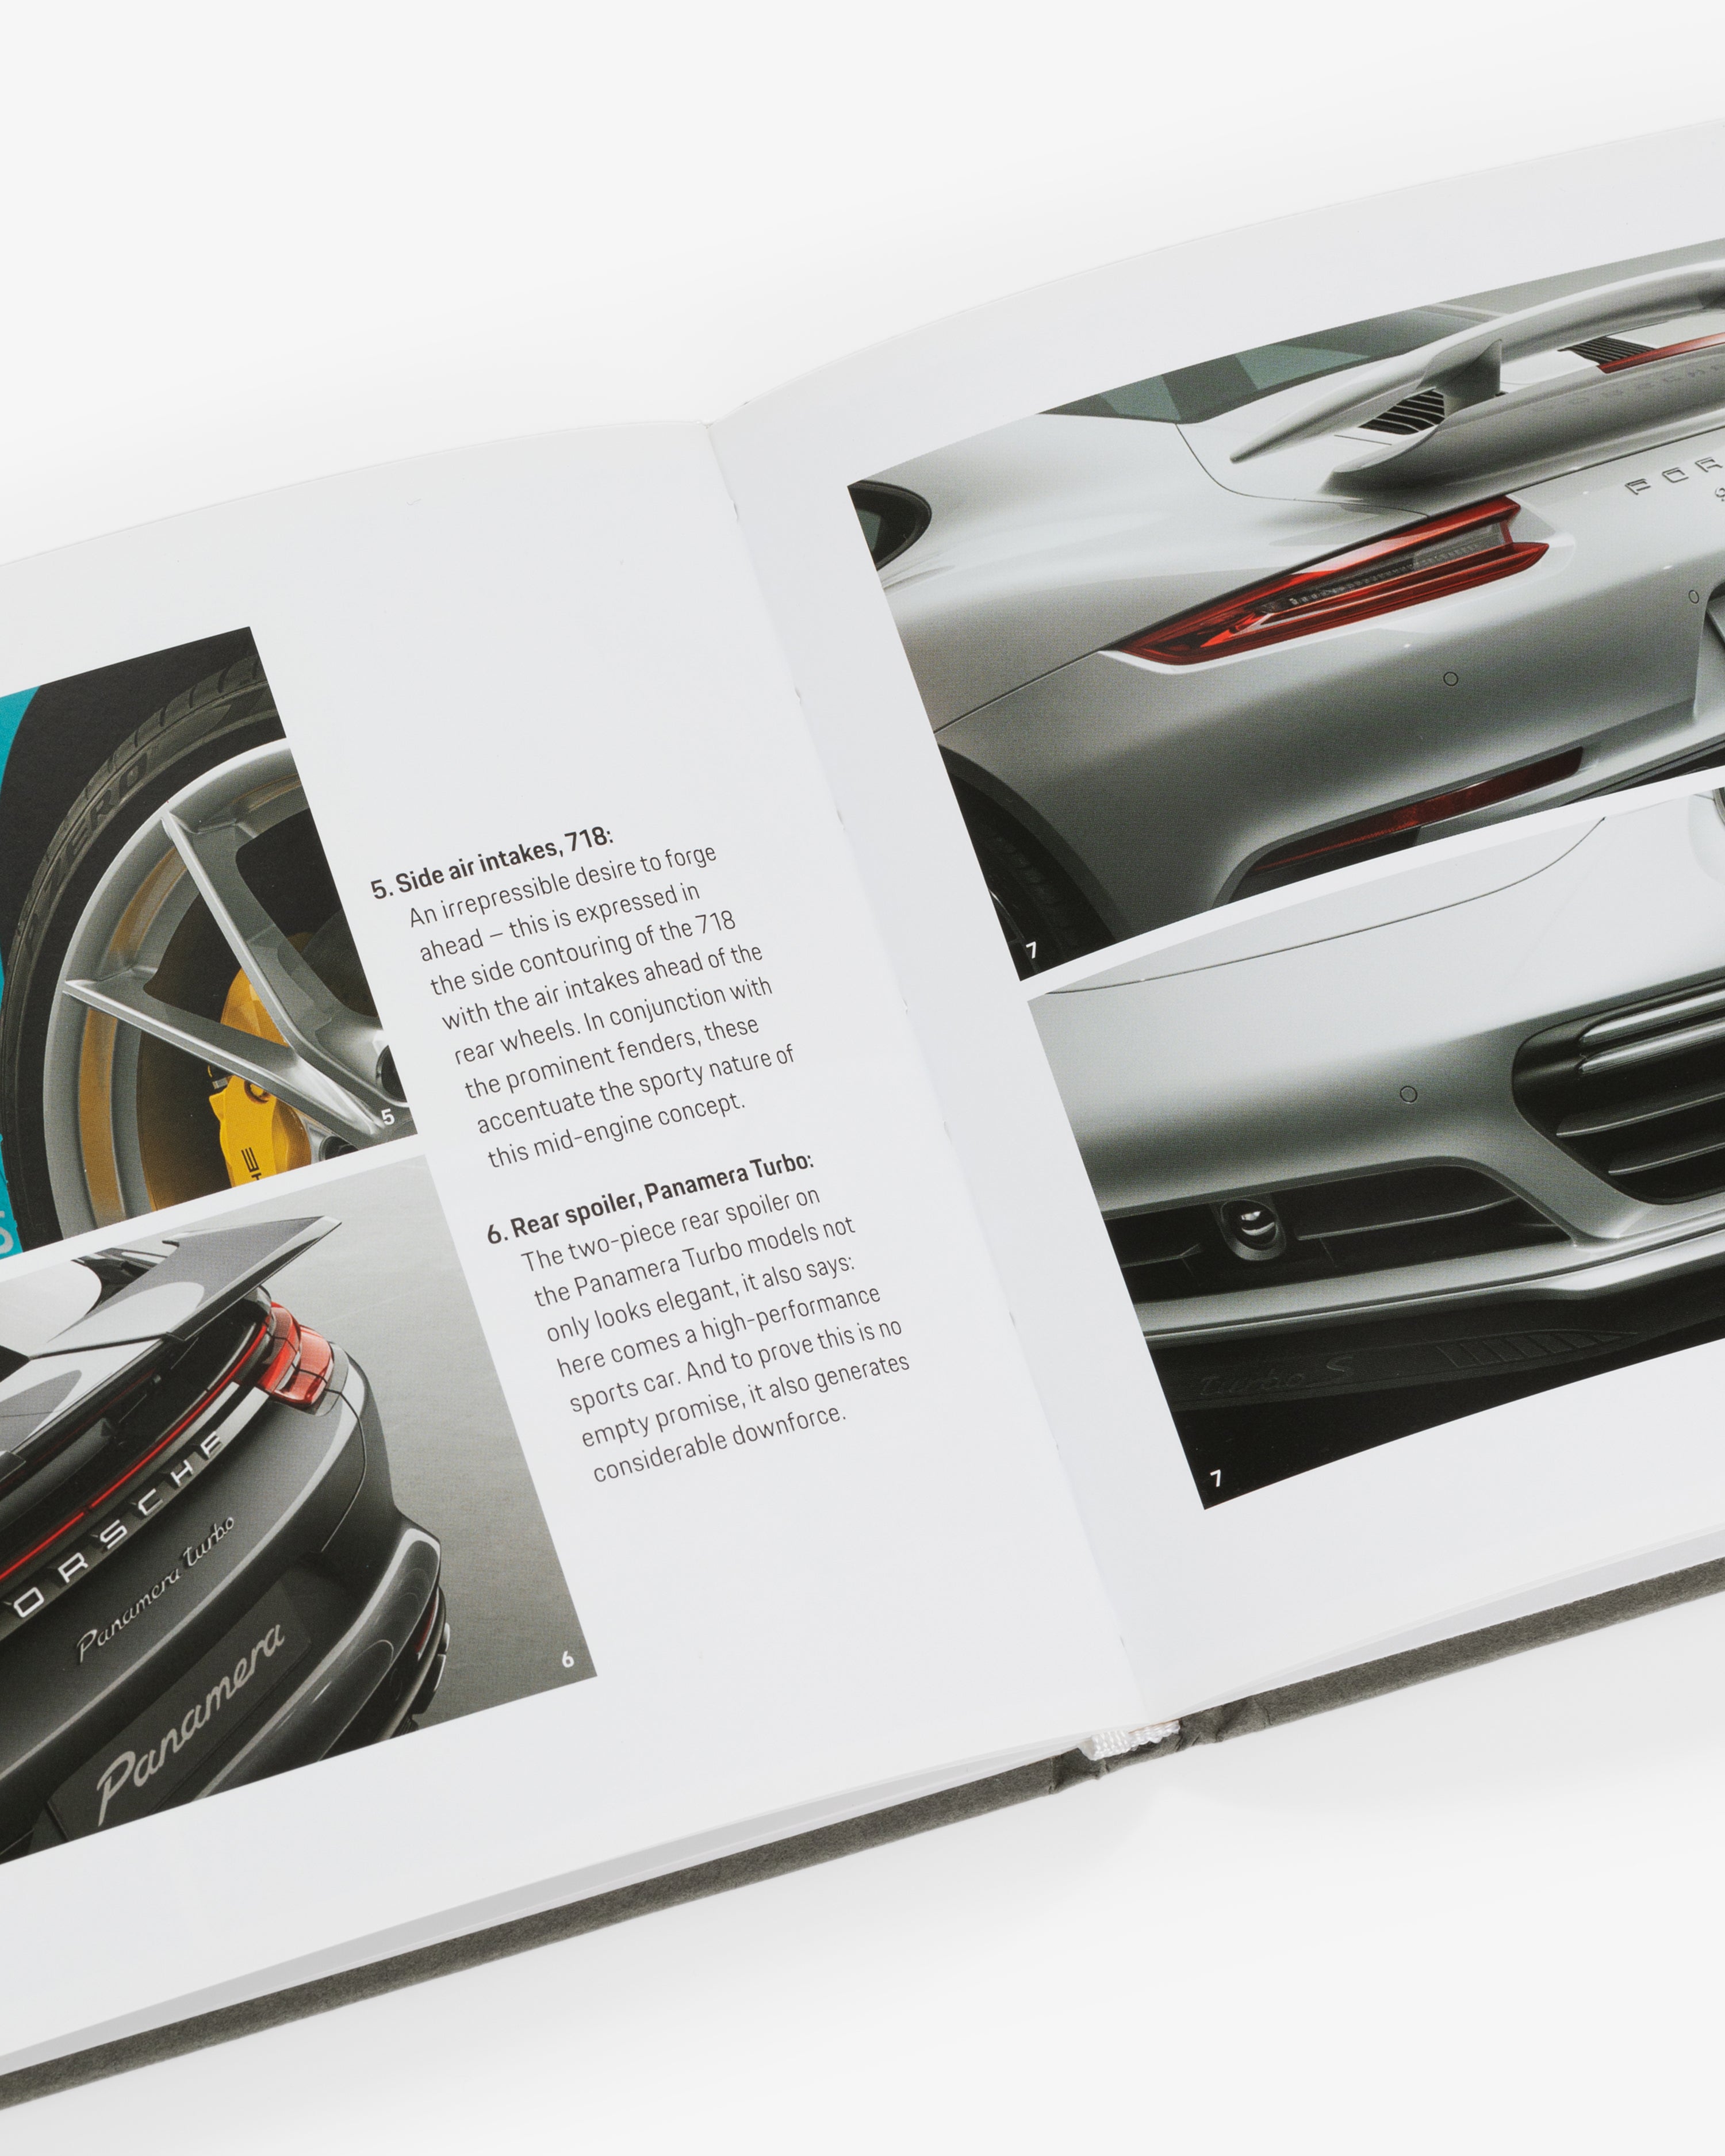 The Porsche Principle Book